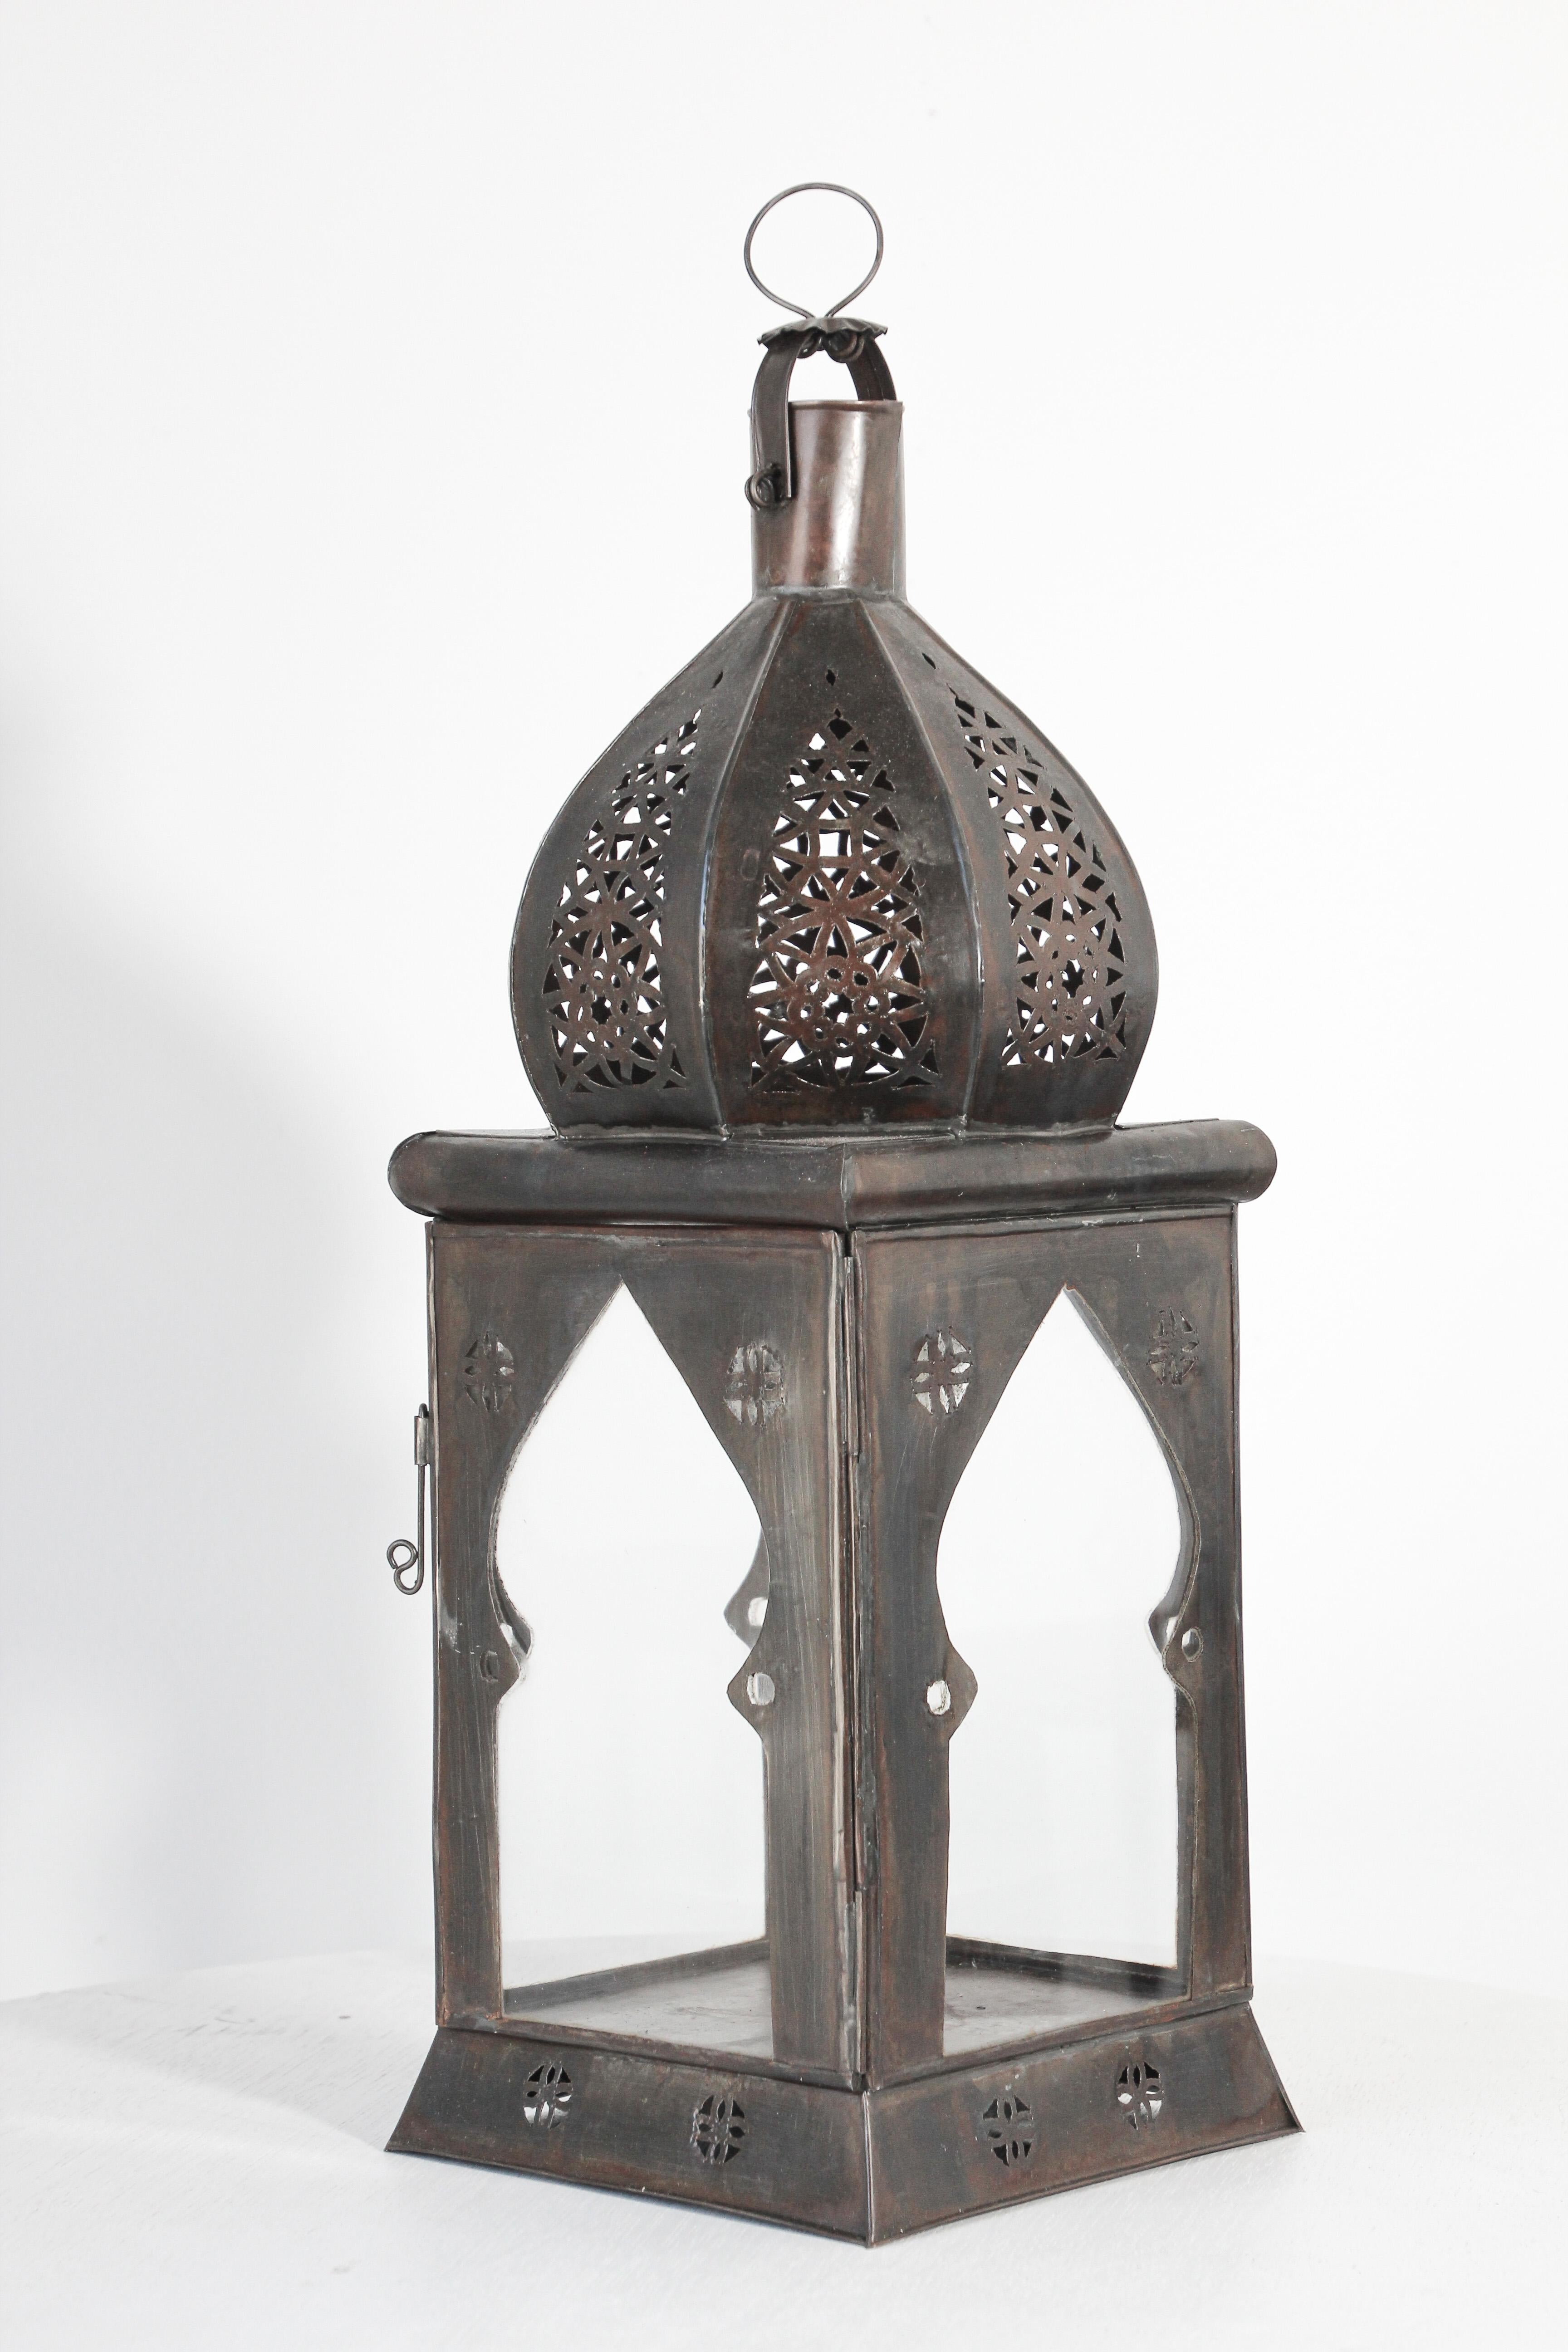 Grande lanterne marocaine en verre transparent fabriquée à la main et ornée de filigranes mauresques en métal ajouré.
Lampe à bougie de type ouragan avec un design ouvert en métal et un verre transparent.
Une petite porte permet d'accéder à